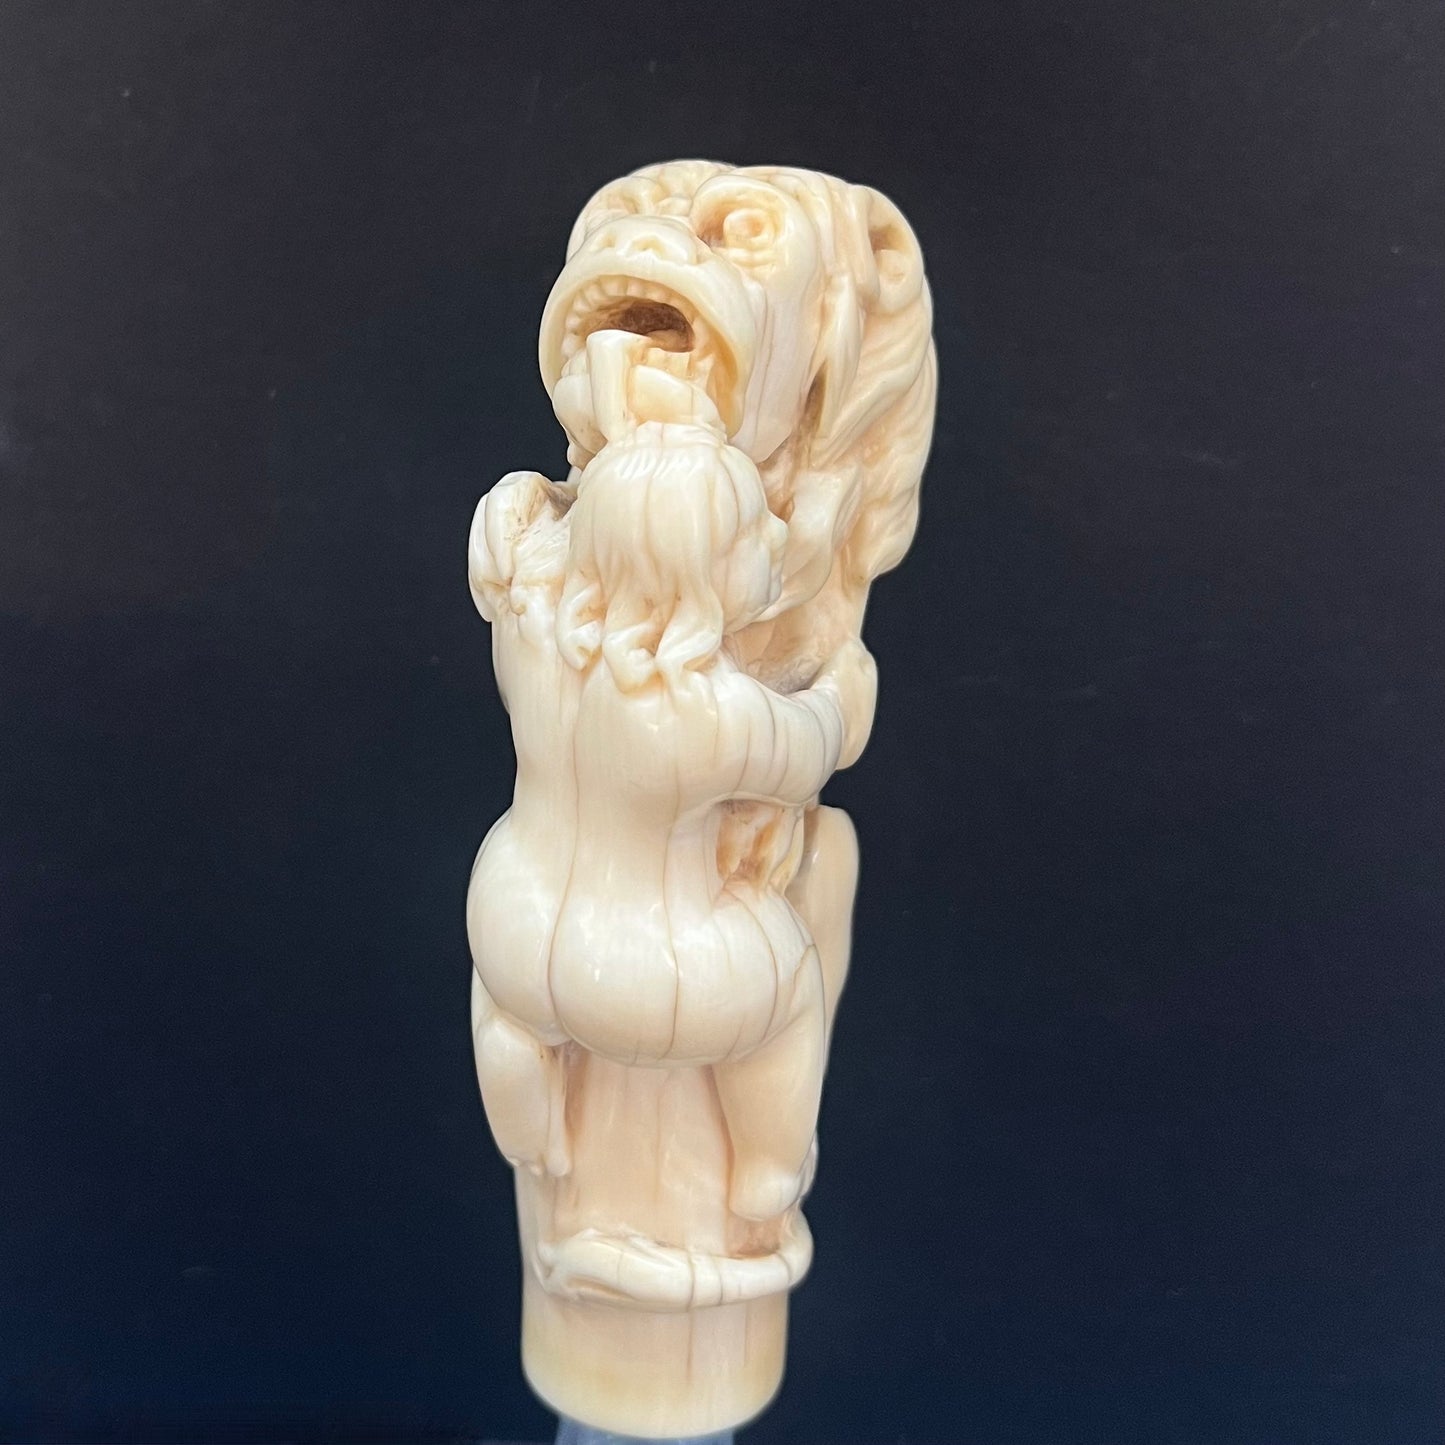 罕见的 18 世纪末至 19 世纪象牙雕刻狮子吞食基督教殉道者的手柄